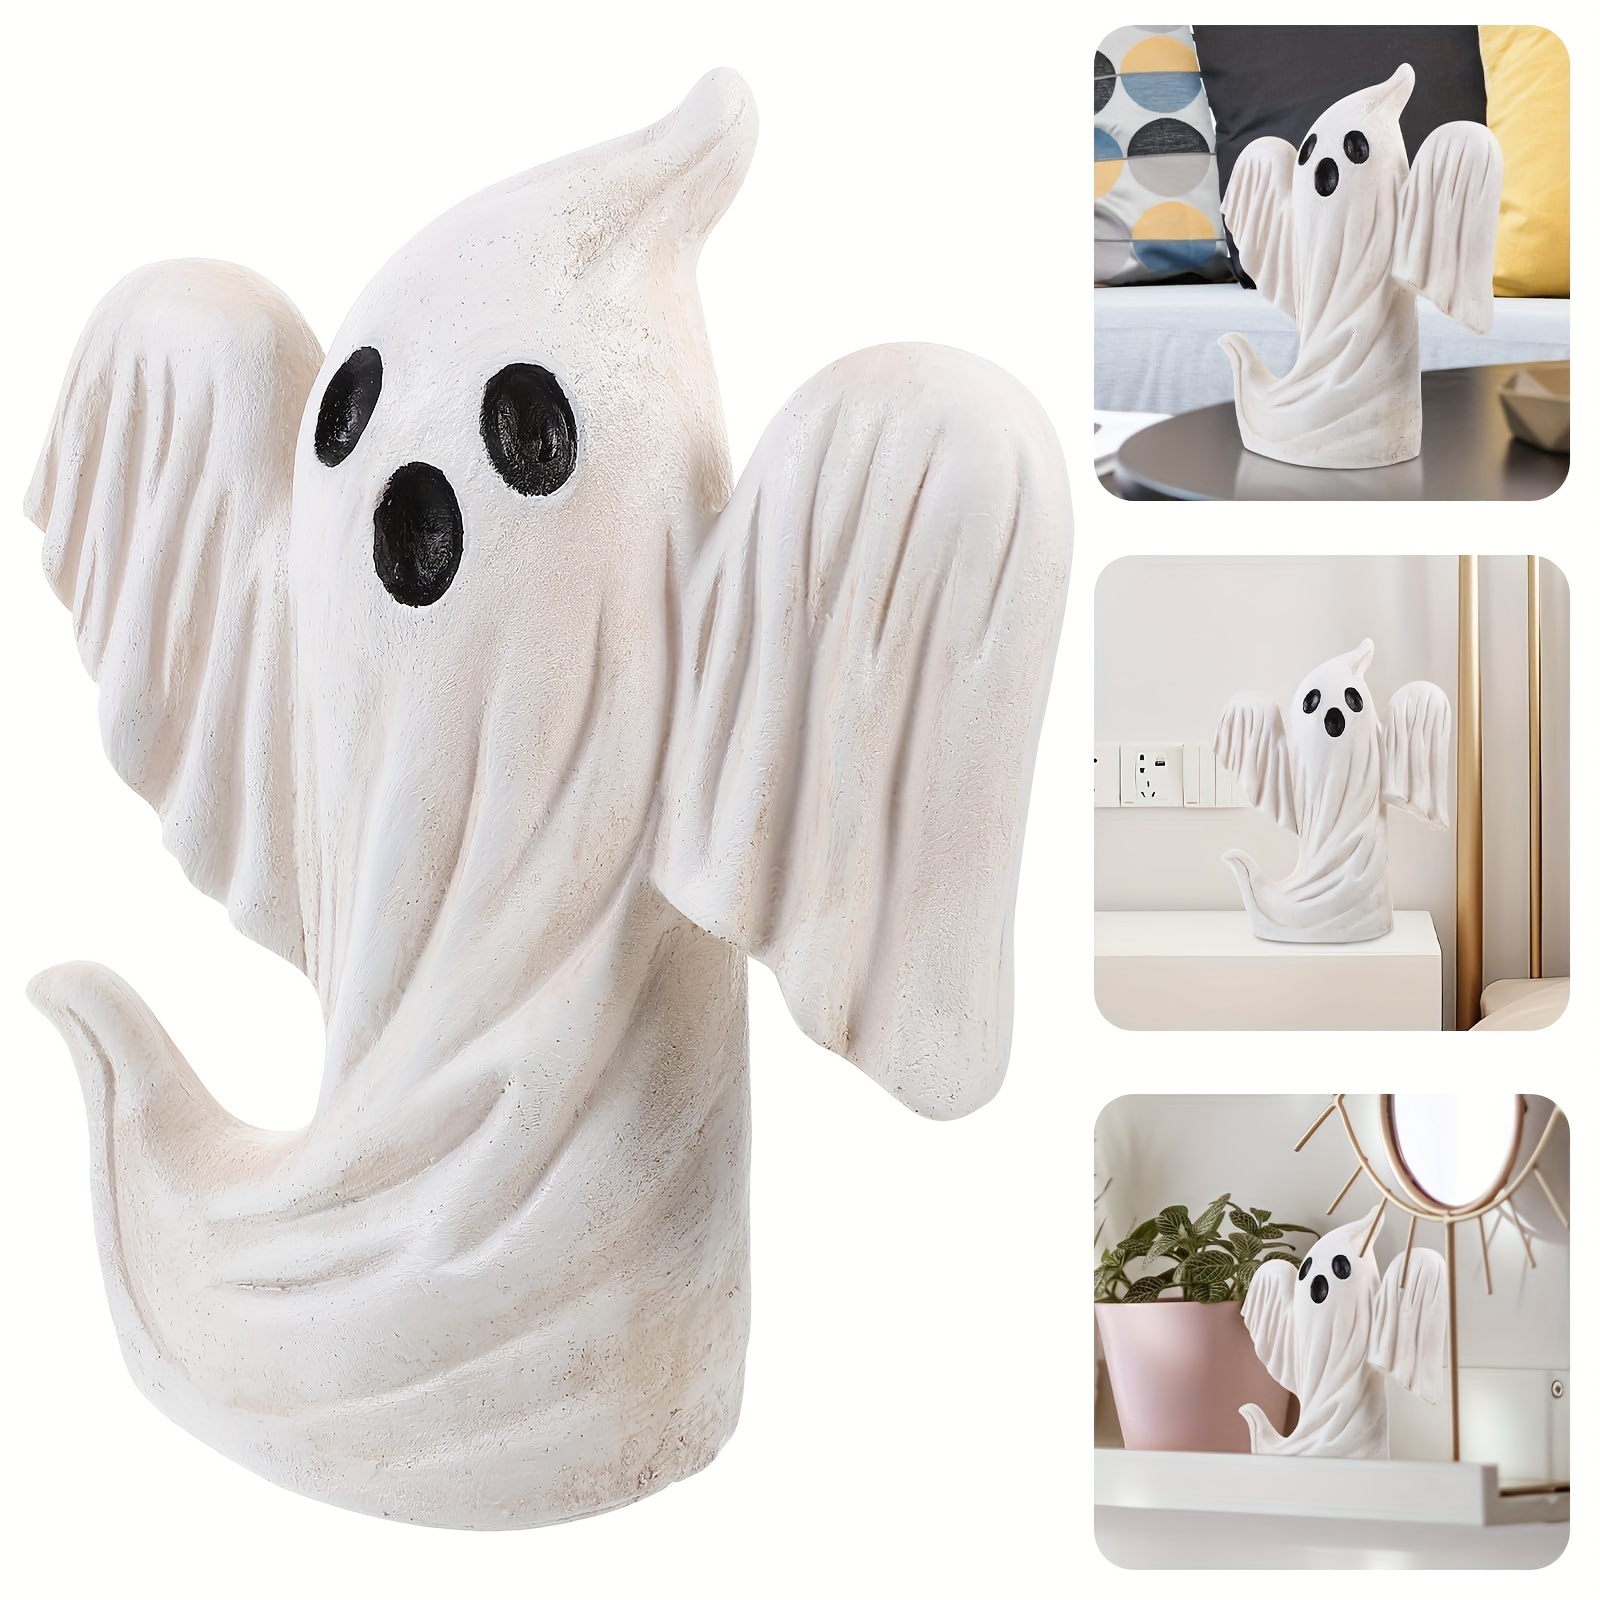 2 pièces miniatures résine fantôme d'Halloween scène de jour accessoires  décoration jouets cadeau